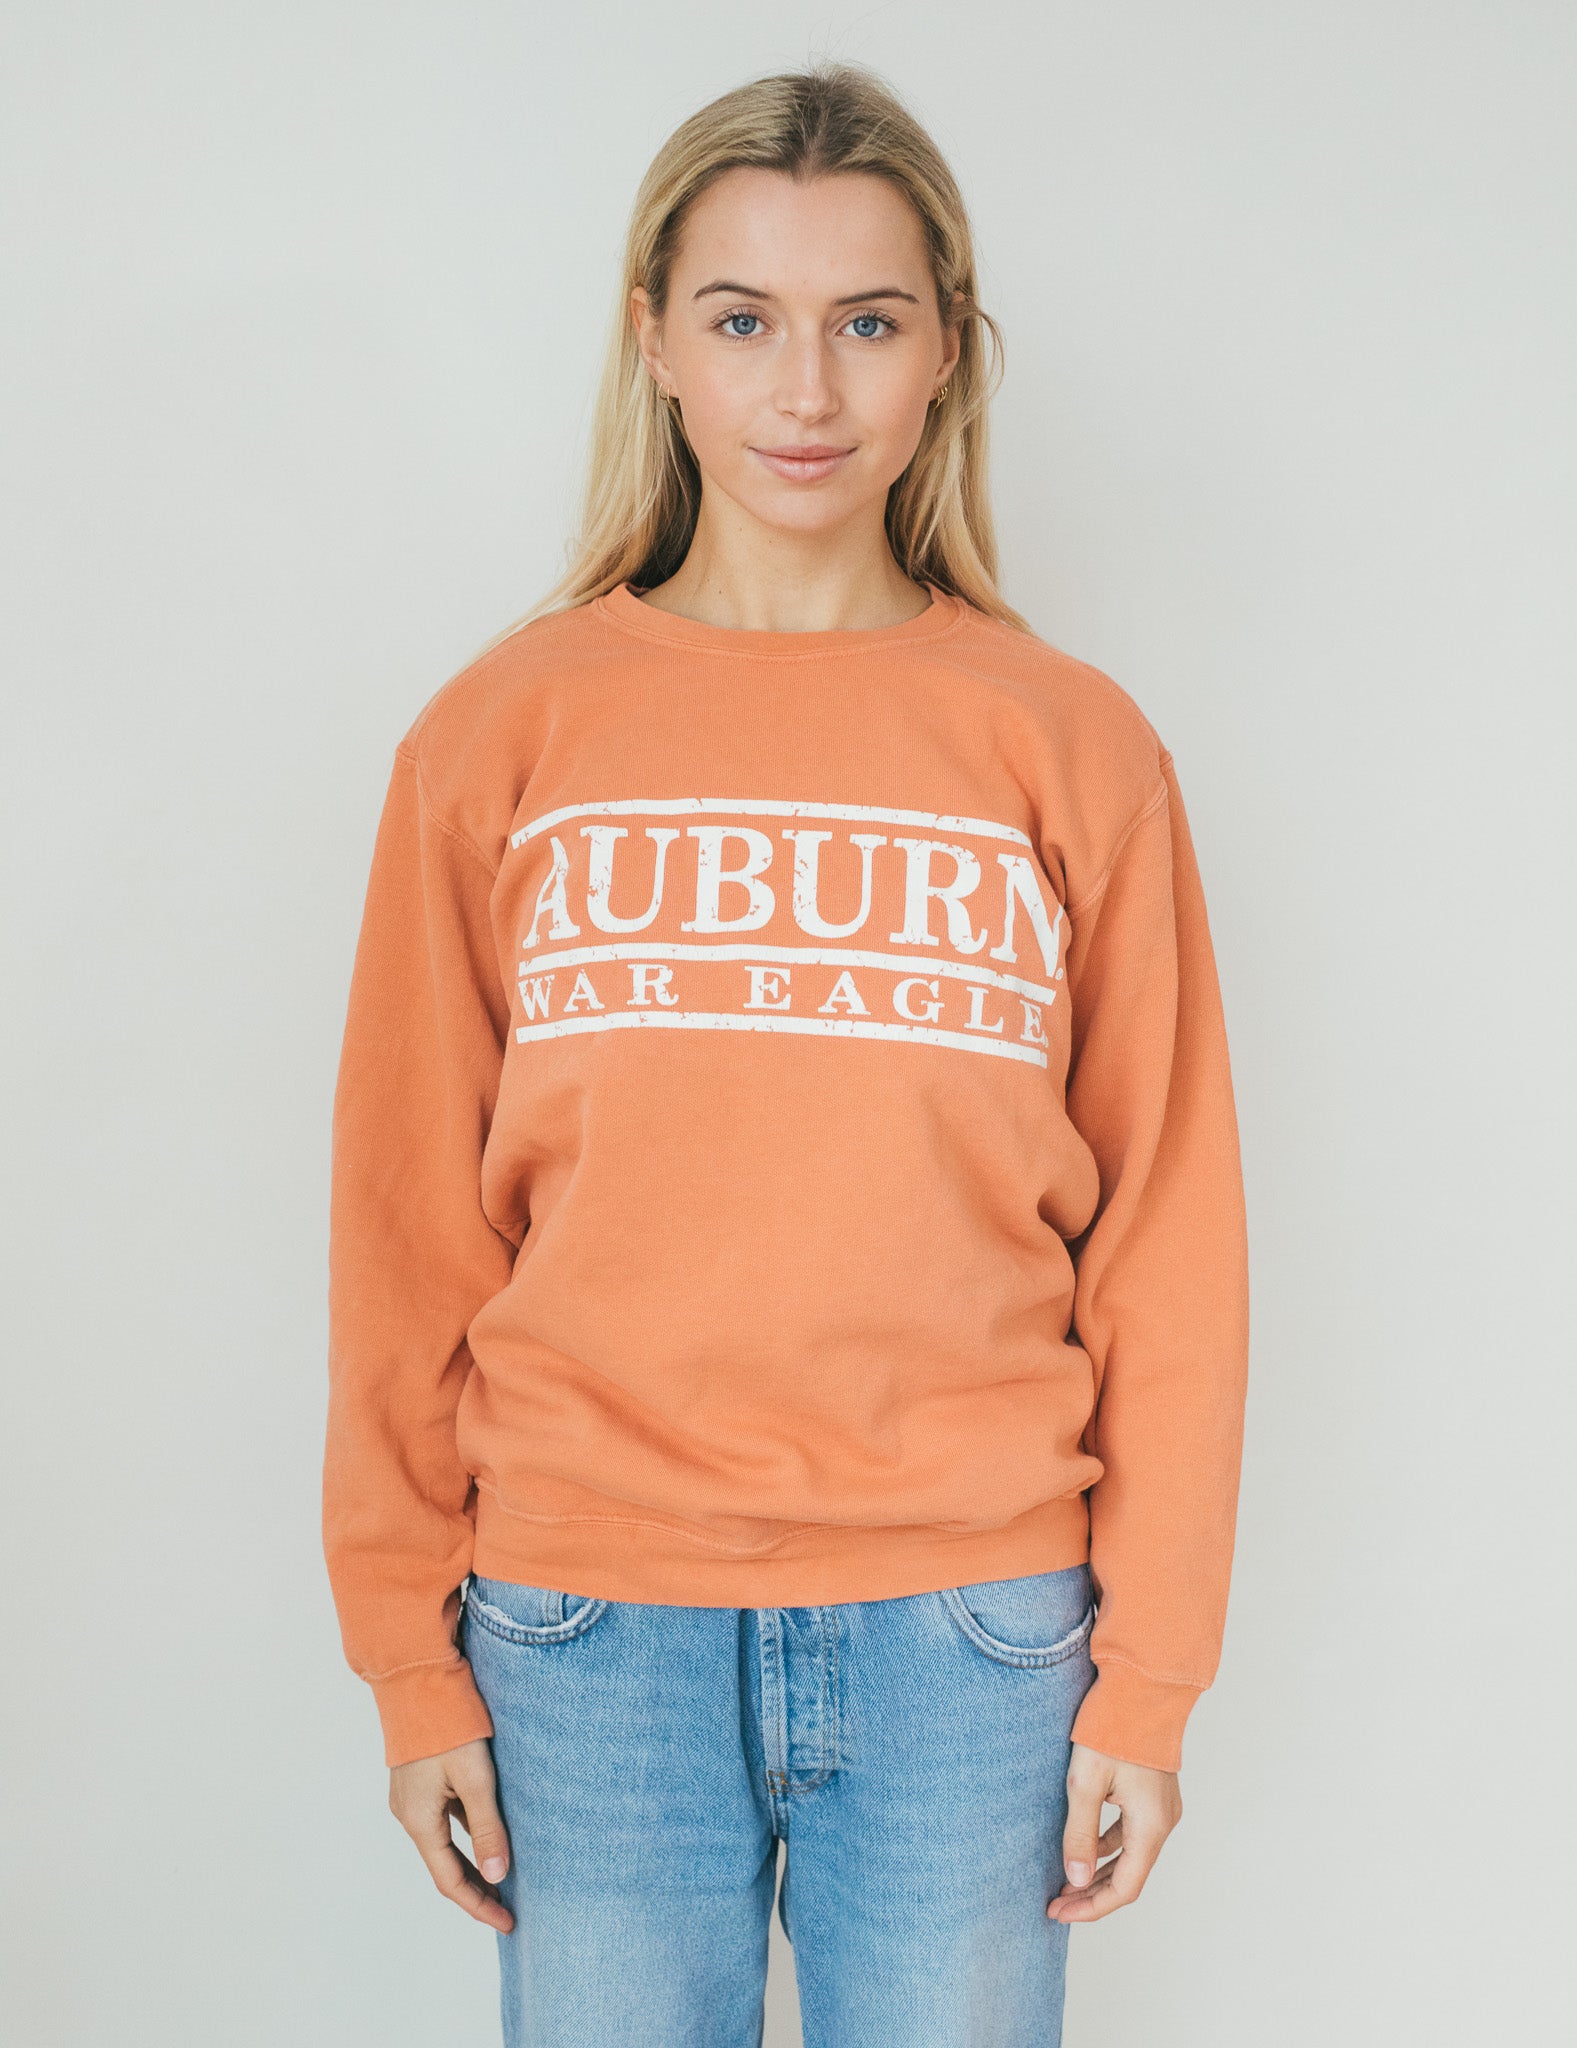 Auburn War Eagle - Sweatshirt